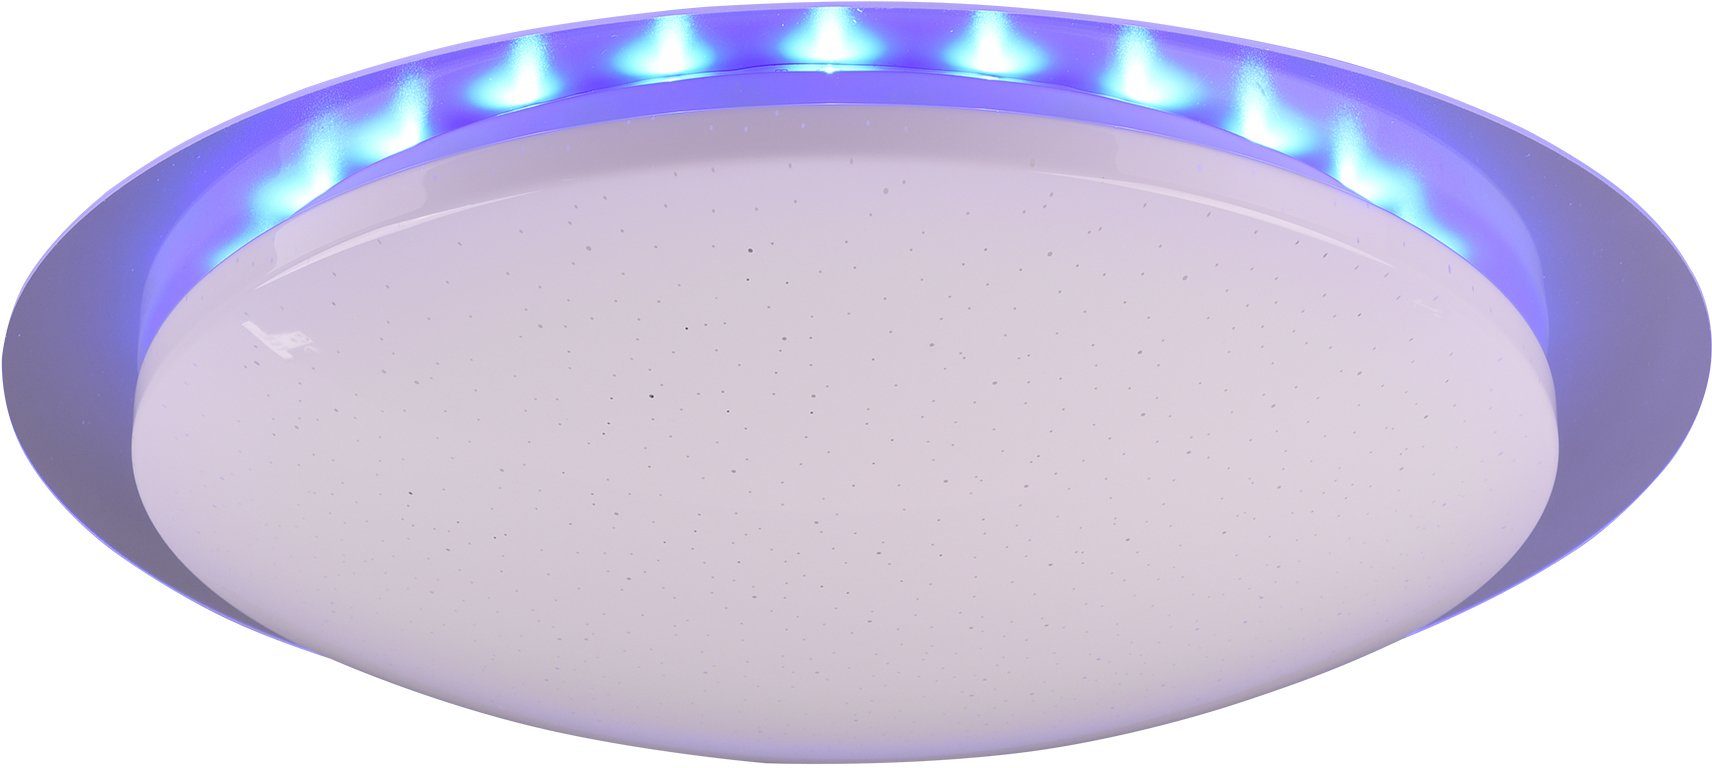 TRIO Leuchten LED getrennt fest Helligkeitsstufen, LED cm Deckenleuchte mit integriert, Dimmer, Farbwechsler, mehrere Ø 48 Fernbed., Backlight, RGB Starlight-Effekt, schaltbar, Dimmer Joleen, inkl